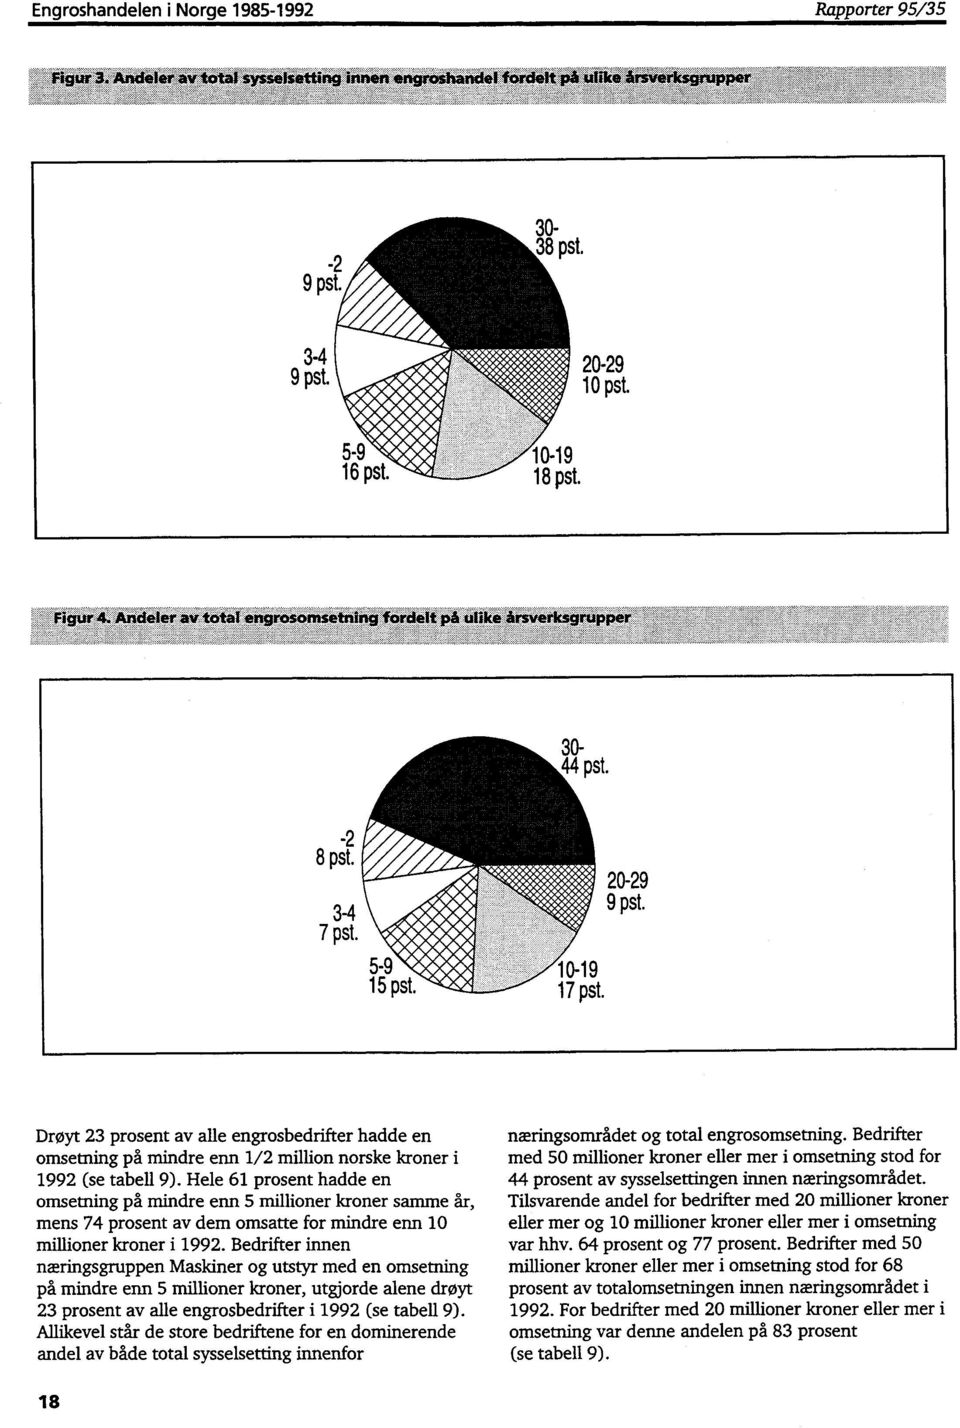 Drøyt 23 prosent av alle engrosbedrifter hadde en omsetning på mindre enn 1/2 million norske kroner i 1992 (se tabell 9).